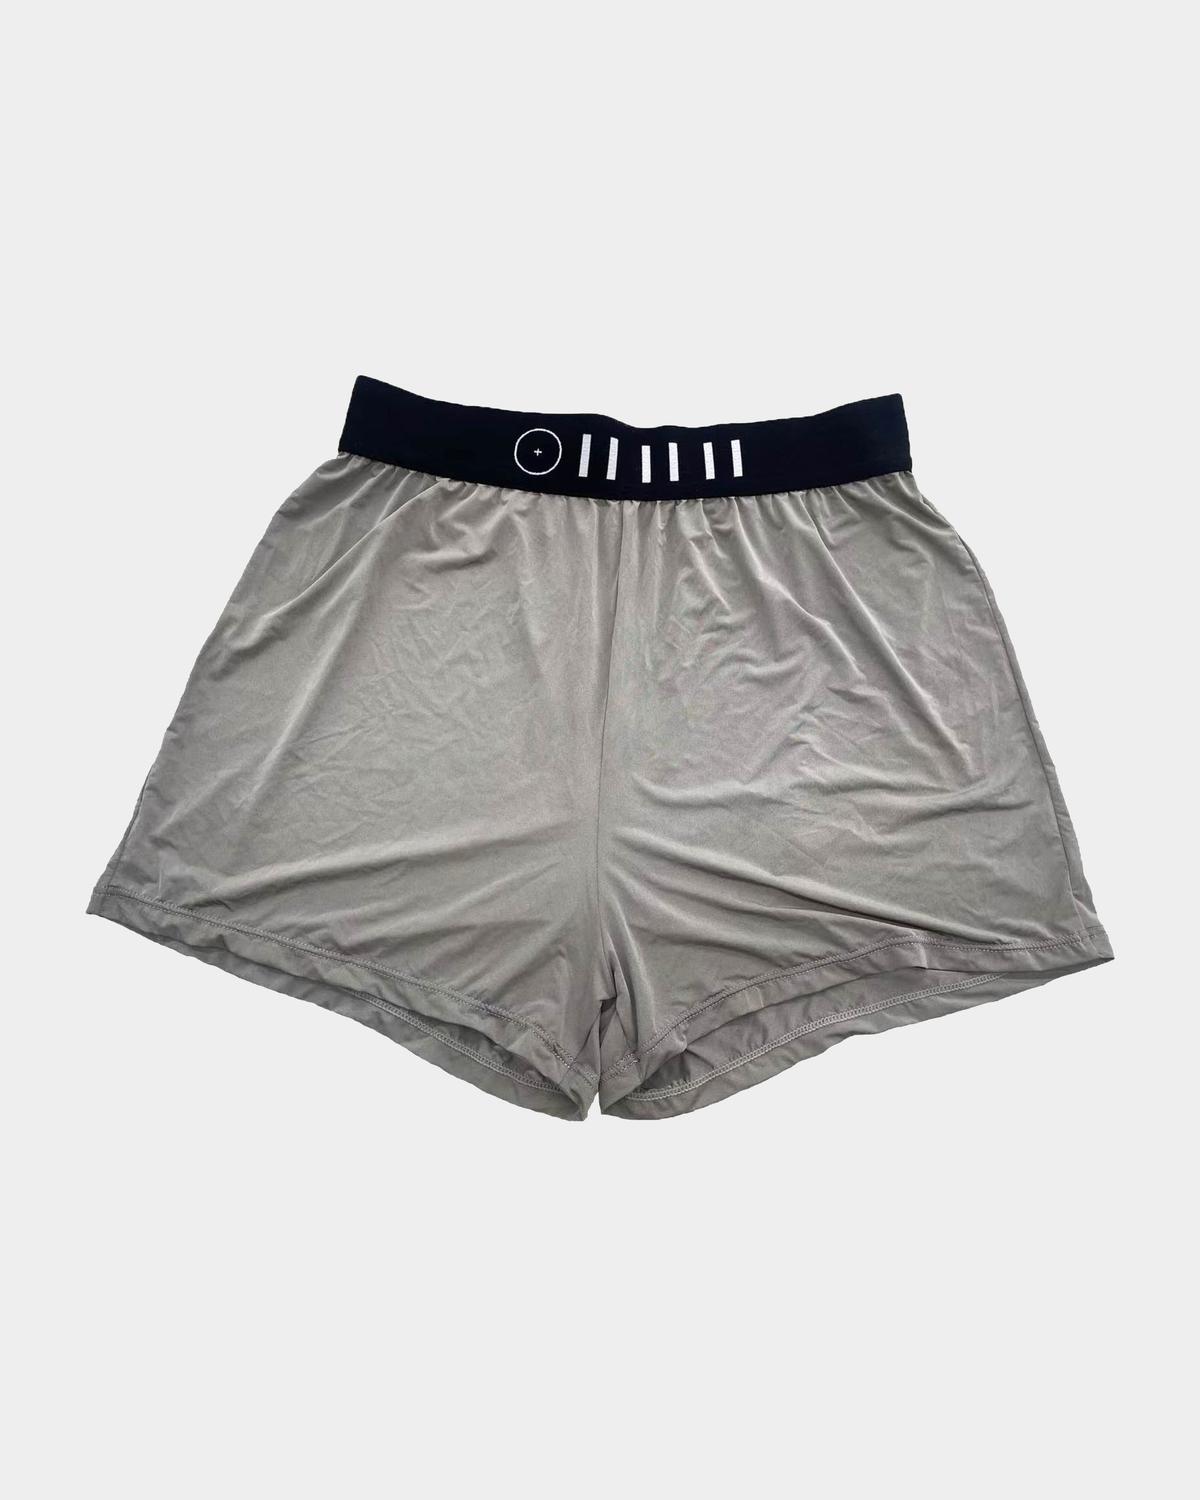 Protency Boxer Shorts